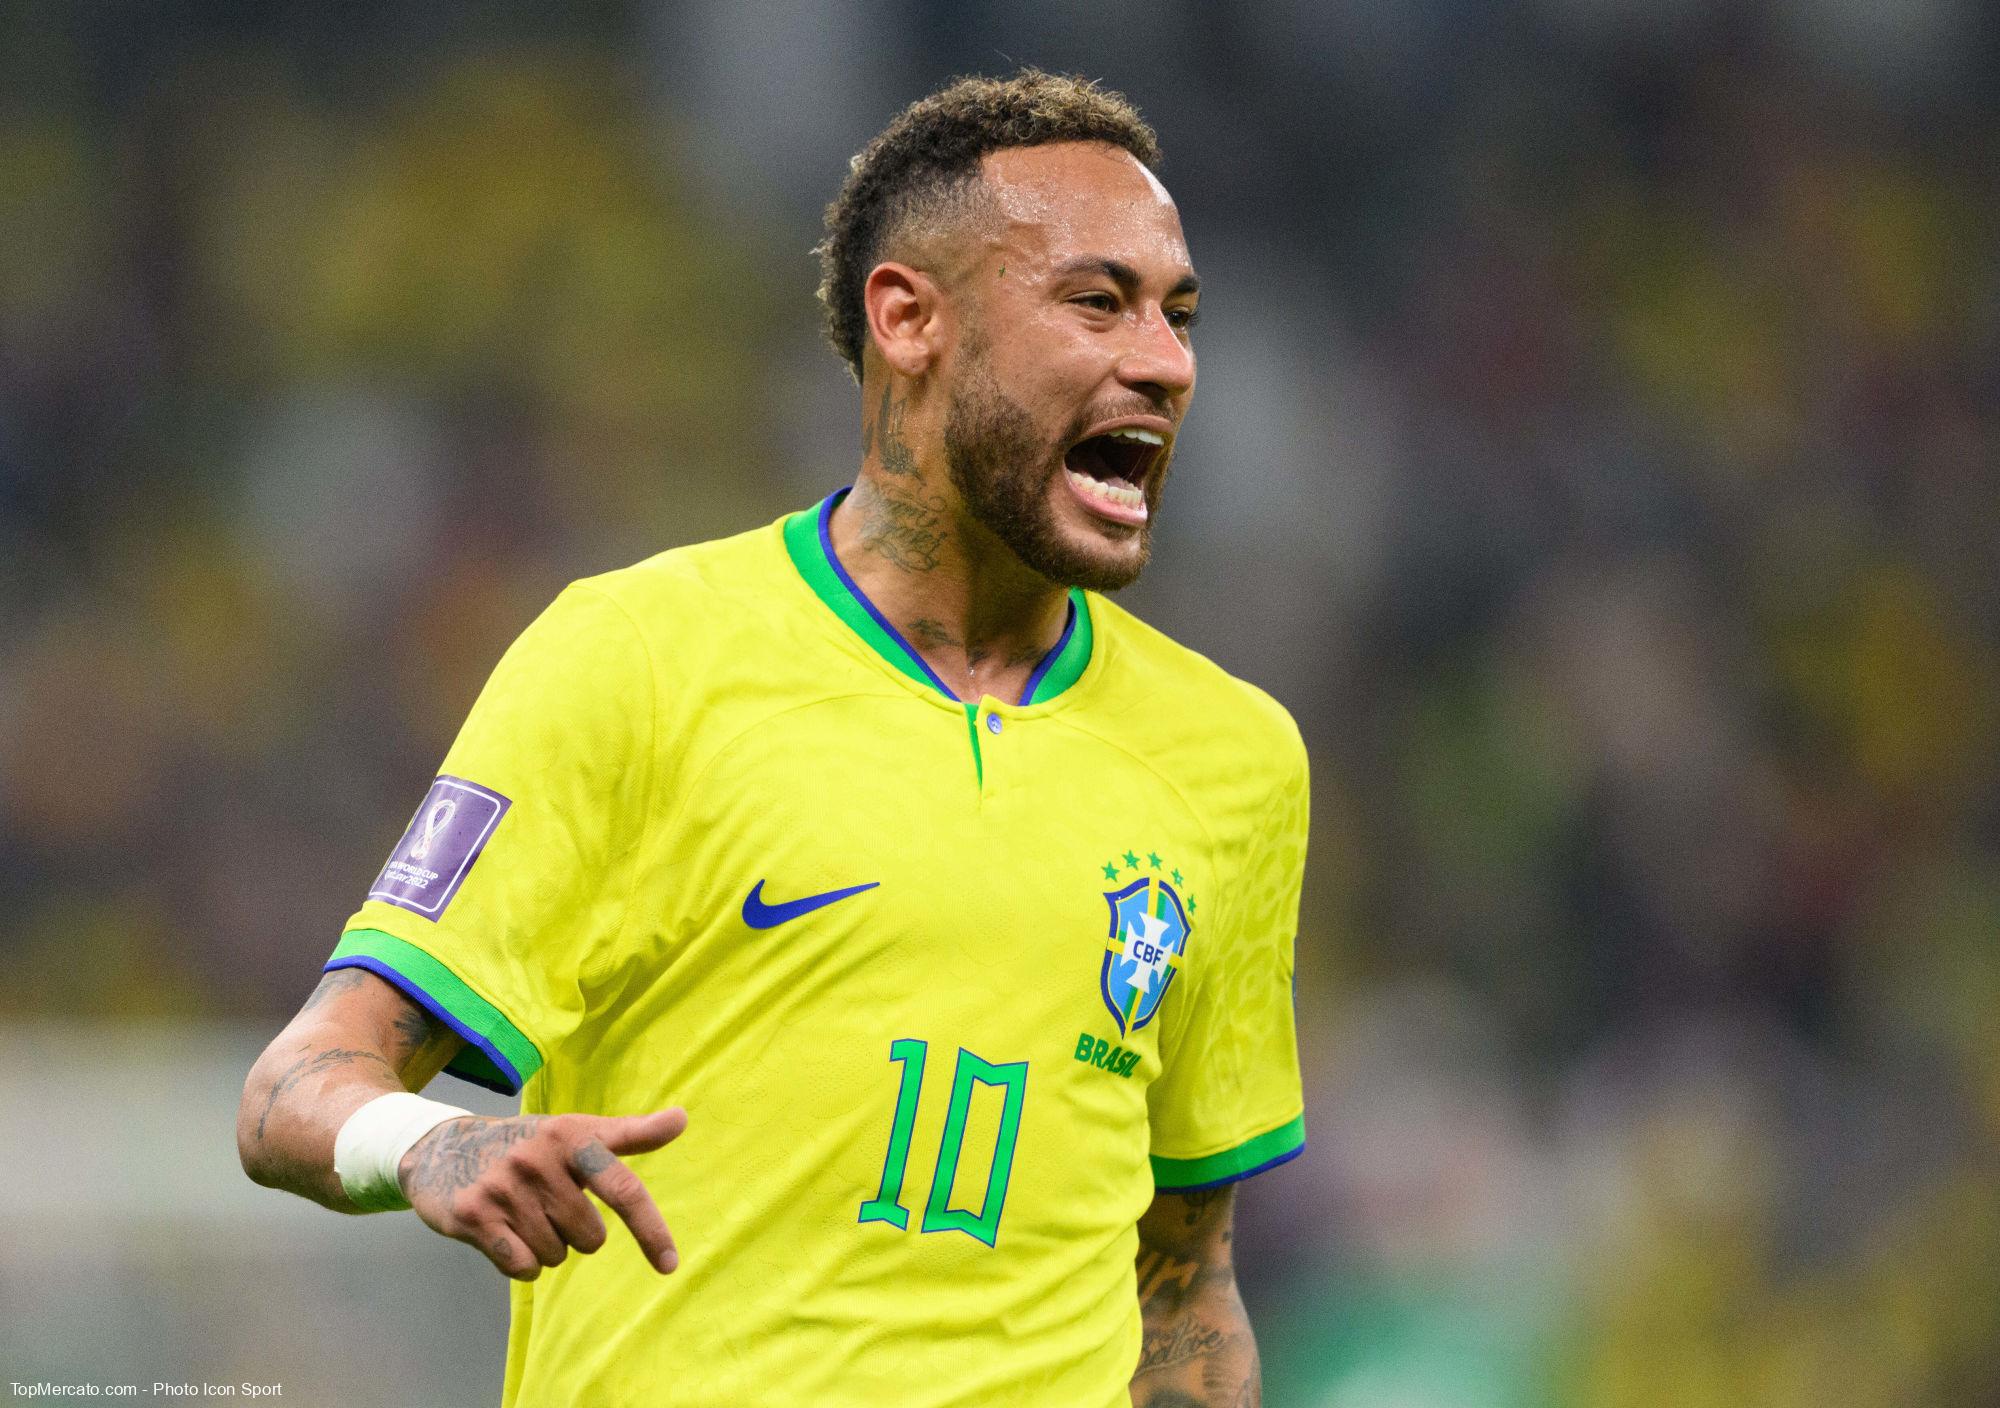 Neymar cite les deux seuls joueurs non Brésiliens qu’il adorait regarder sur YouTube